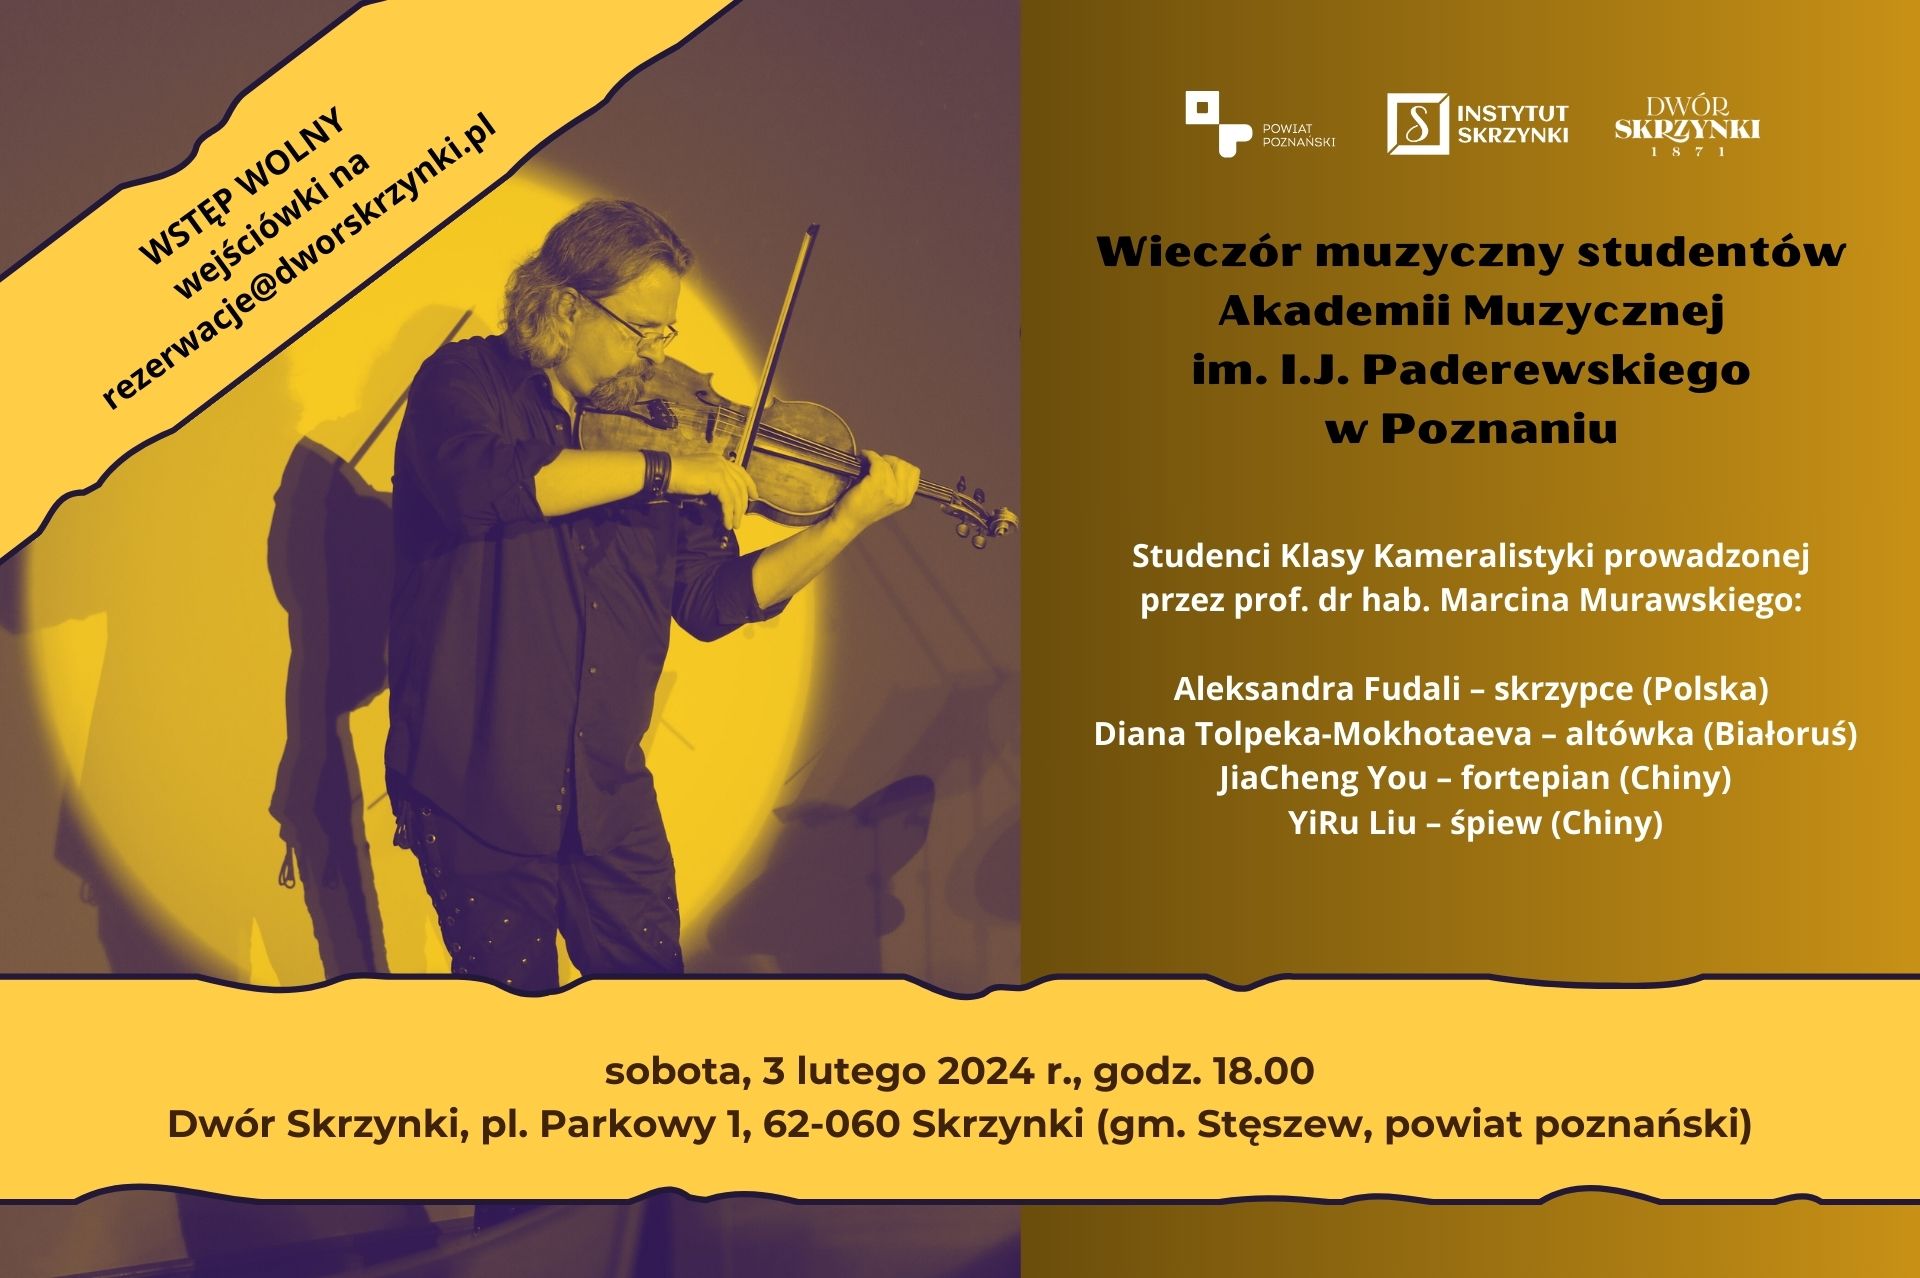 You are currently viewing Wieczór muzyczny studentów Akademii Muzycznej w Dworze Skrzynki